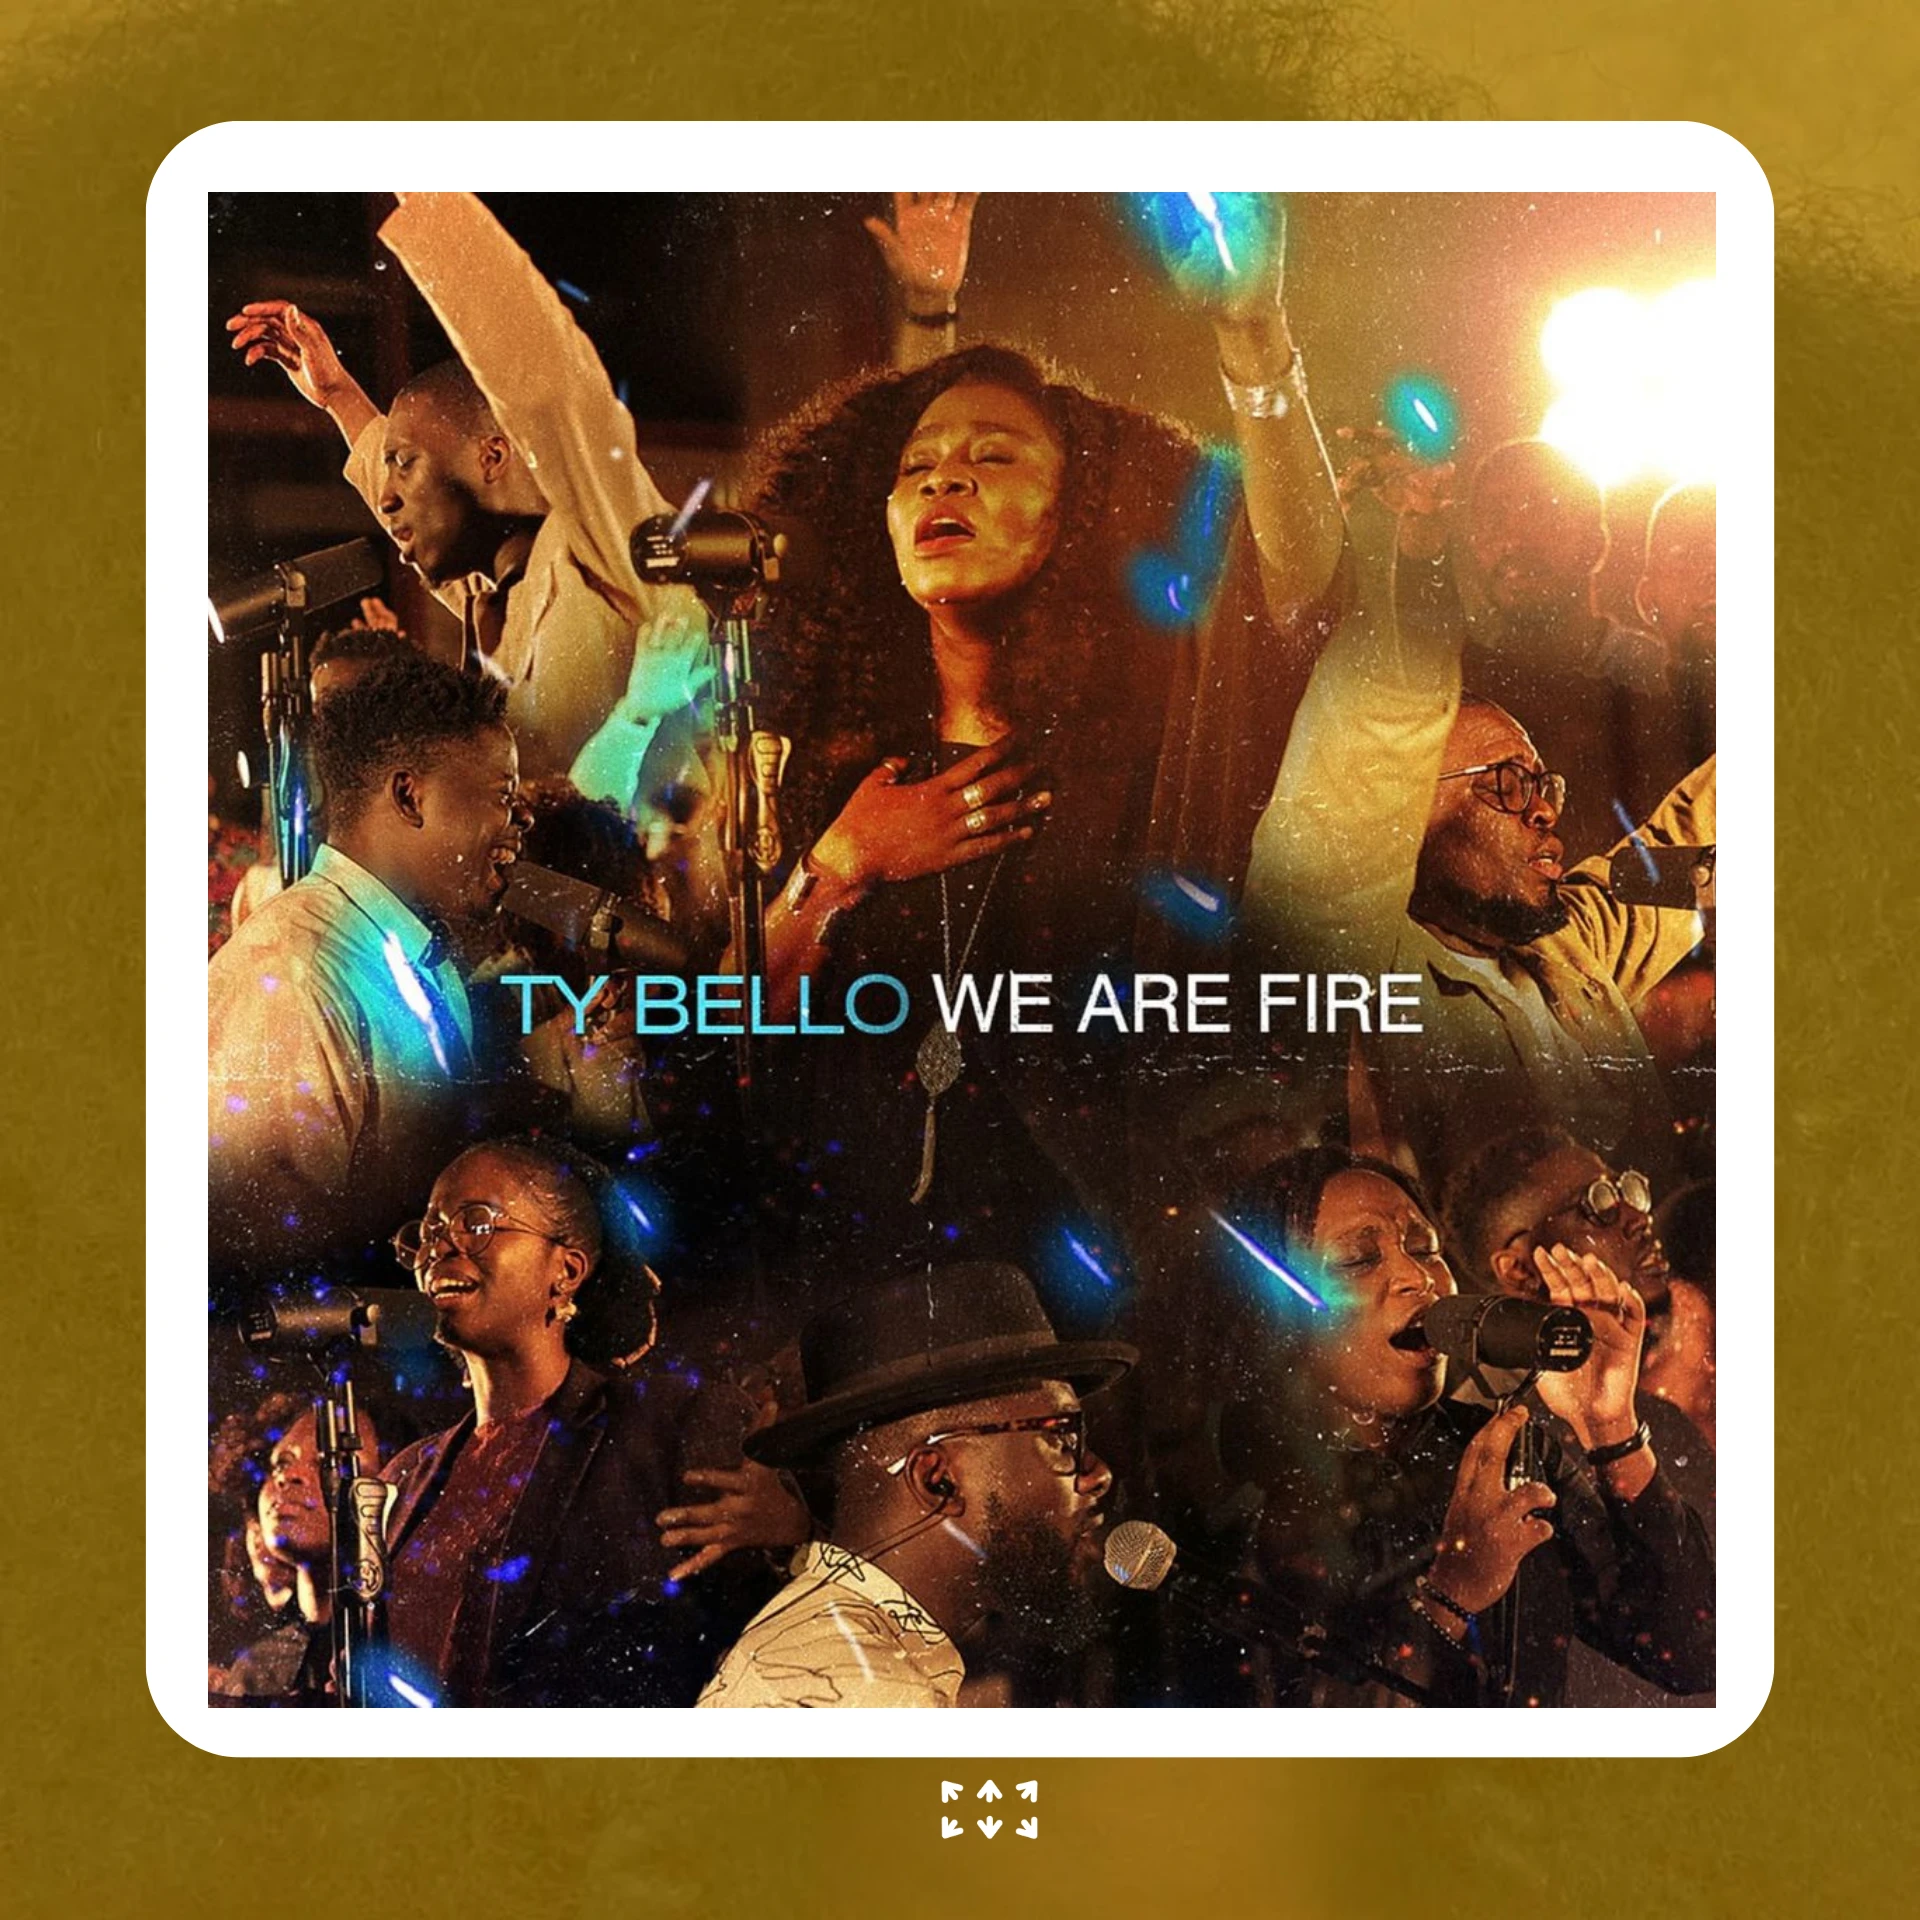 TY Bello's last album We are Fire